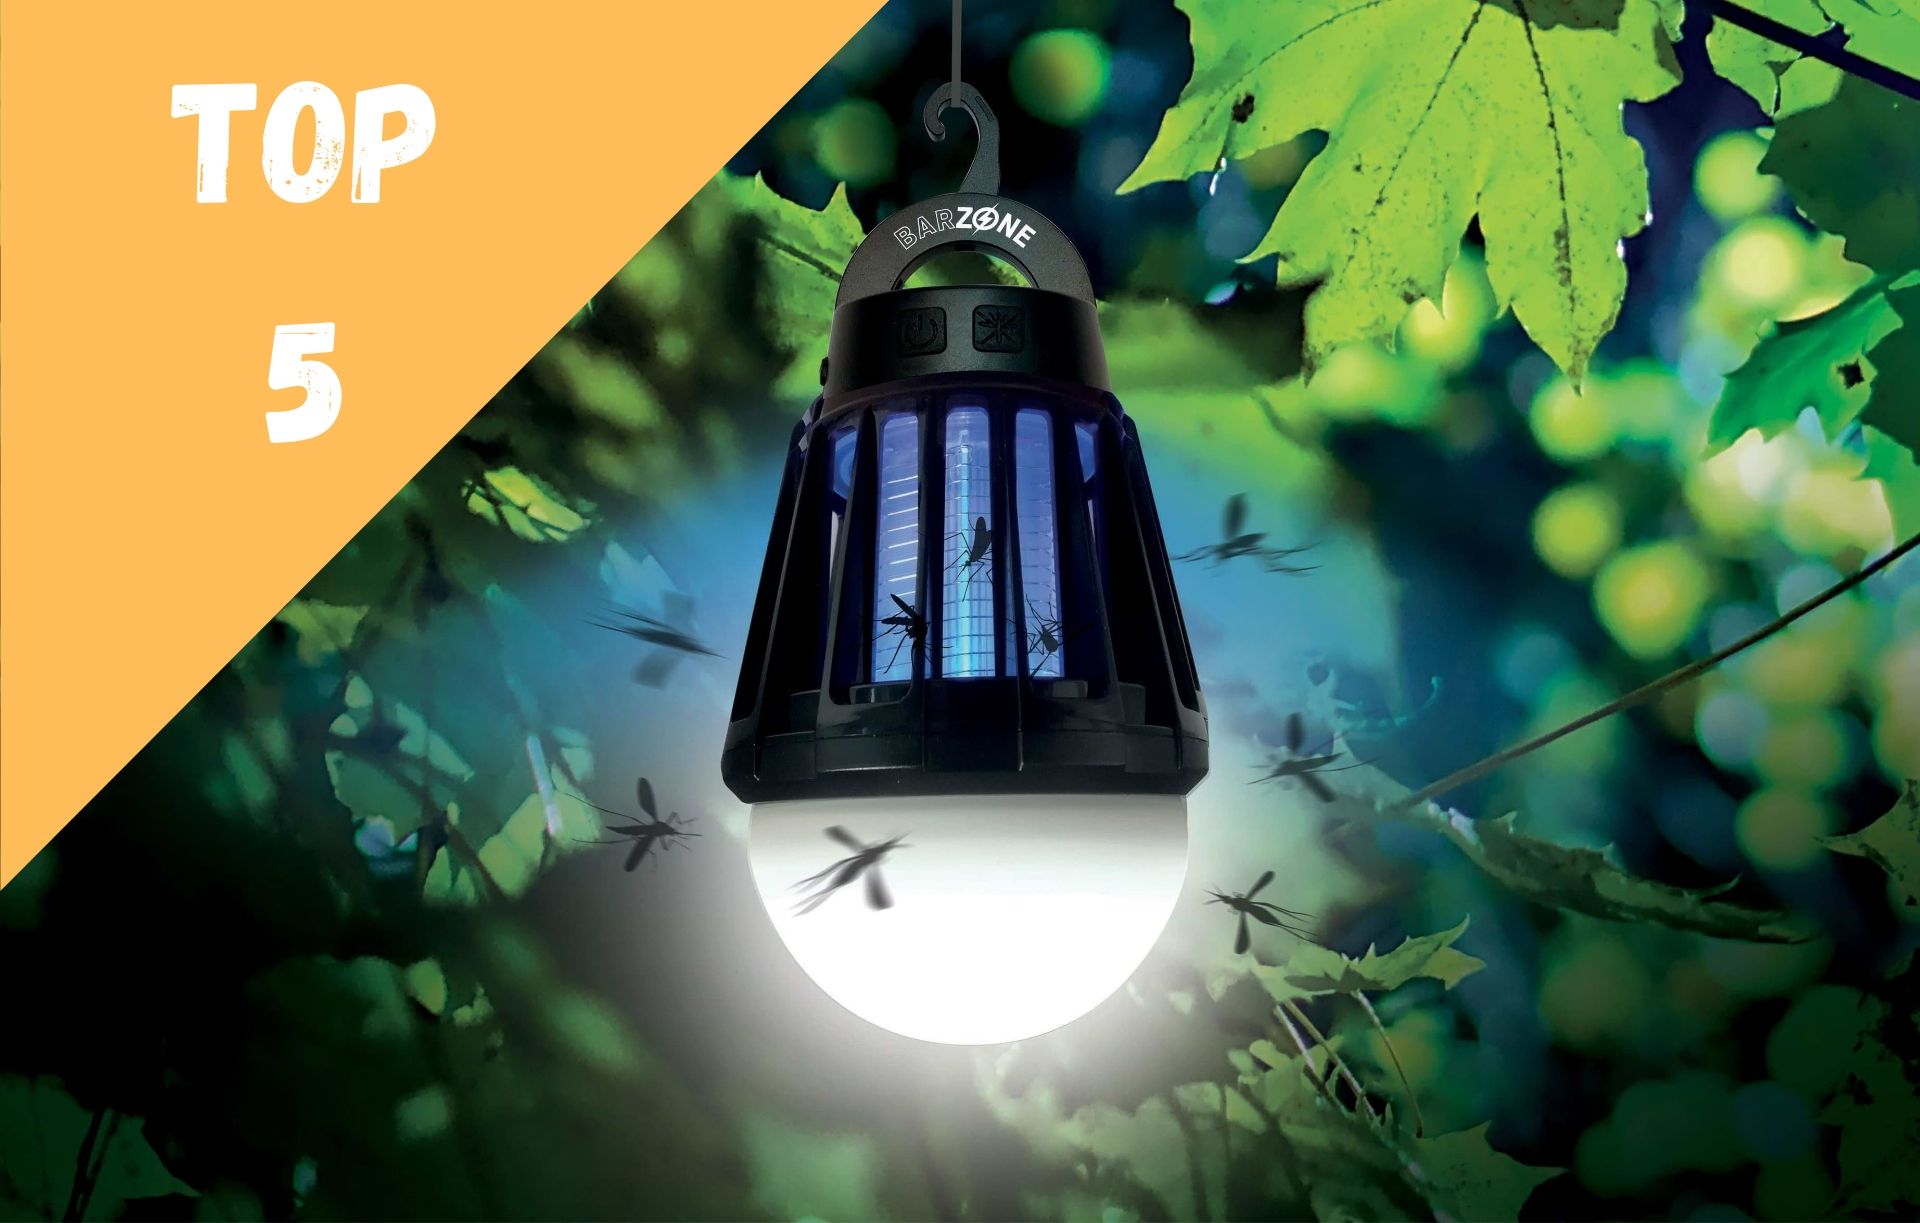 Lampe rayon UV anti moustique insectes efficace intérieur extérieur écologique 